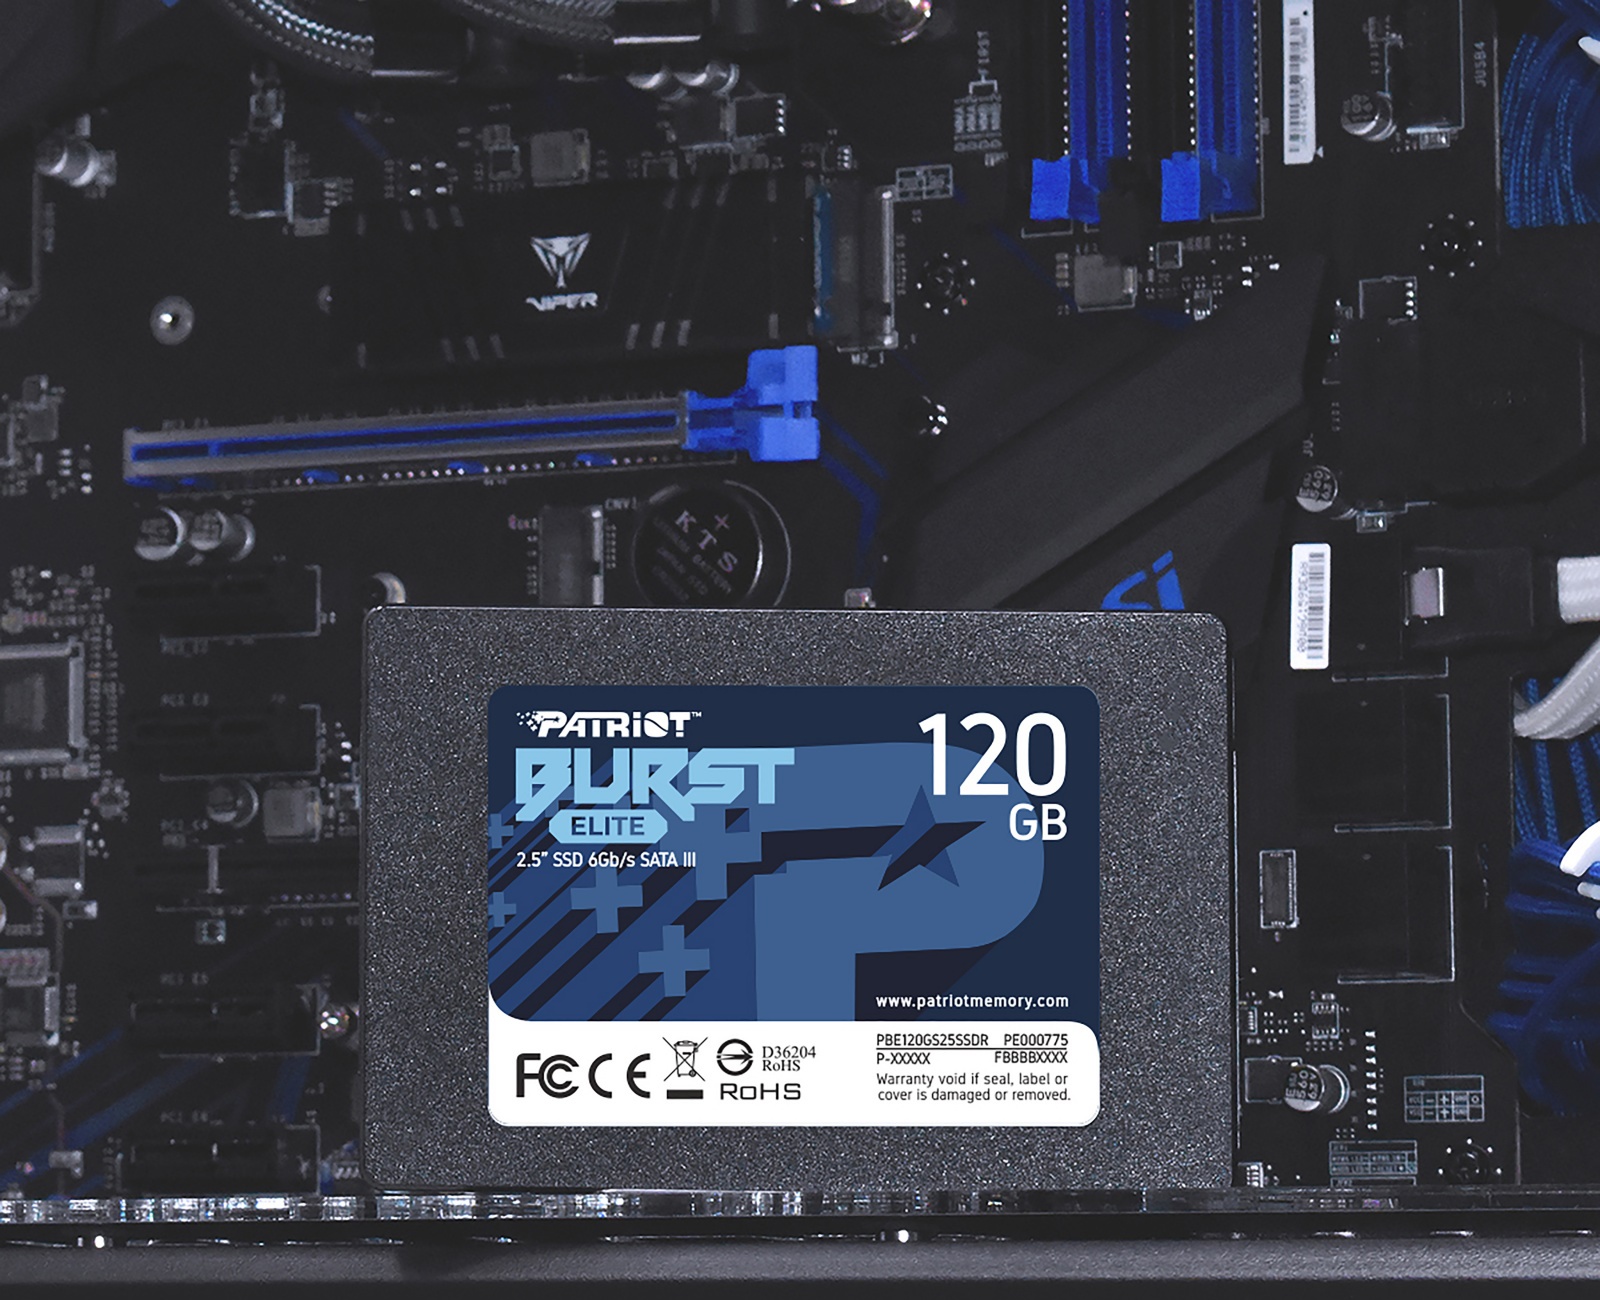 Interný SSD disk Patriot Burst Elite s kapacitou 120 GB ponúka vysoké prenosové rýchlosti, aby zabránil spomaľovaniu výkonu zo strany úložiska.